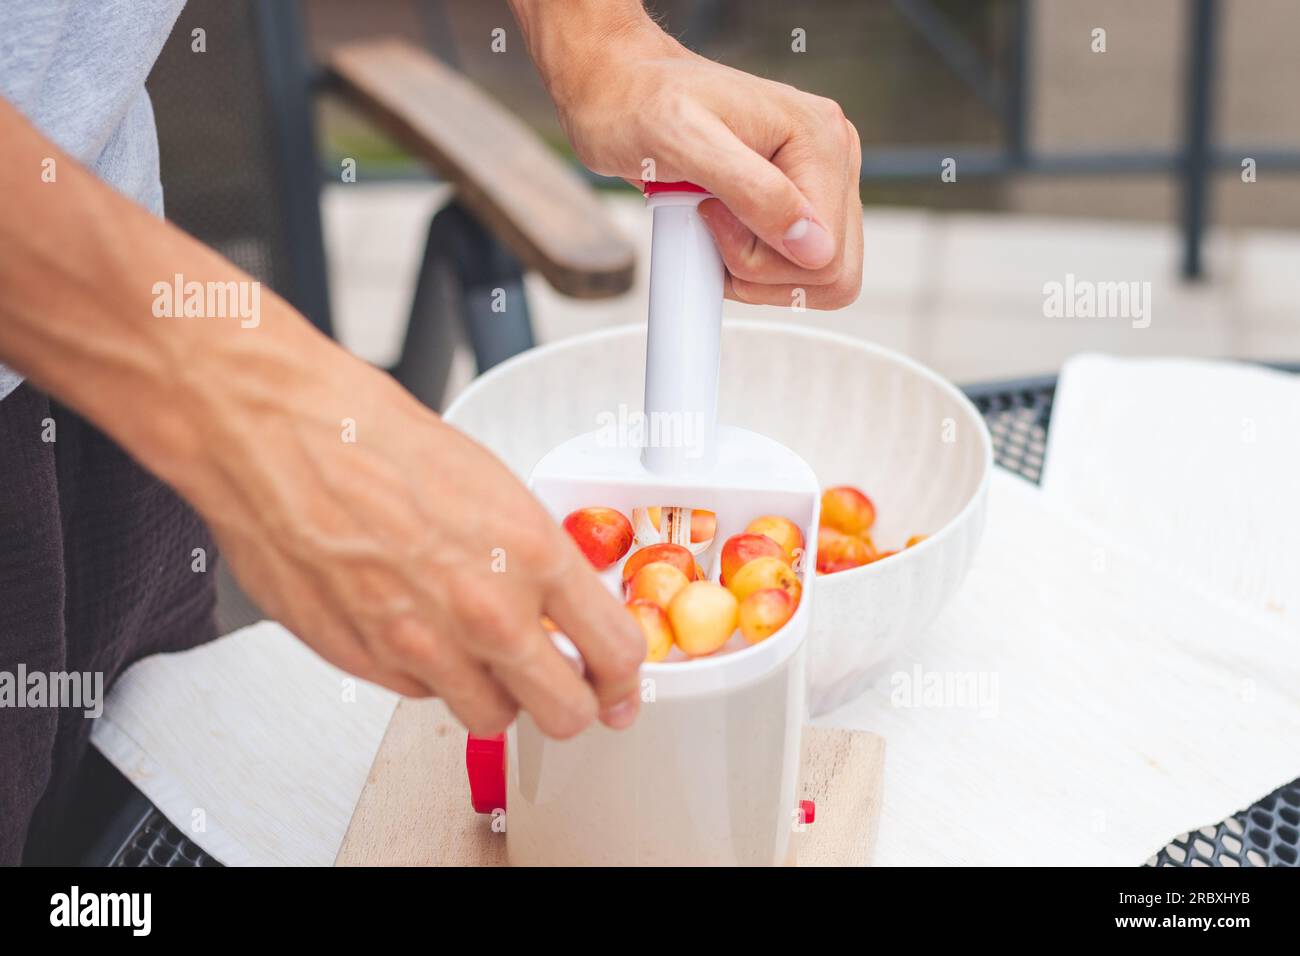 Il lavoratore utilizza un semplice strumento per estrarre pozzi da ciliegie fresche e prepararli per un ulteriore utilizzo. Lavoro manuale con la frutta. Lavori stagionali. Foto Stock